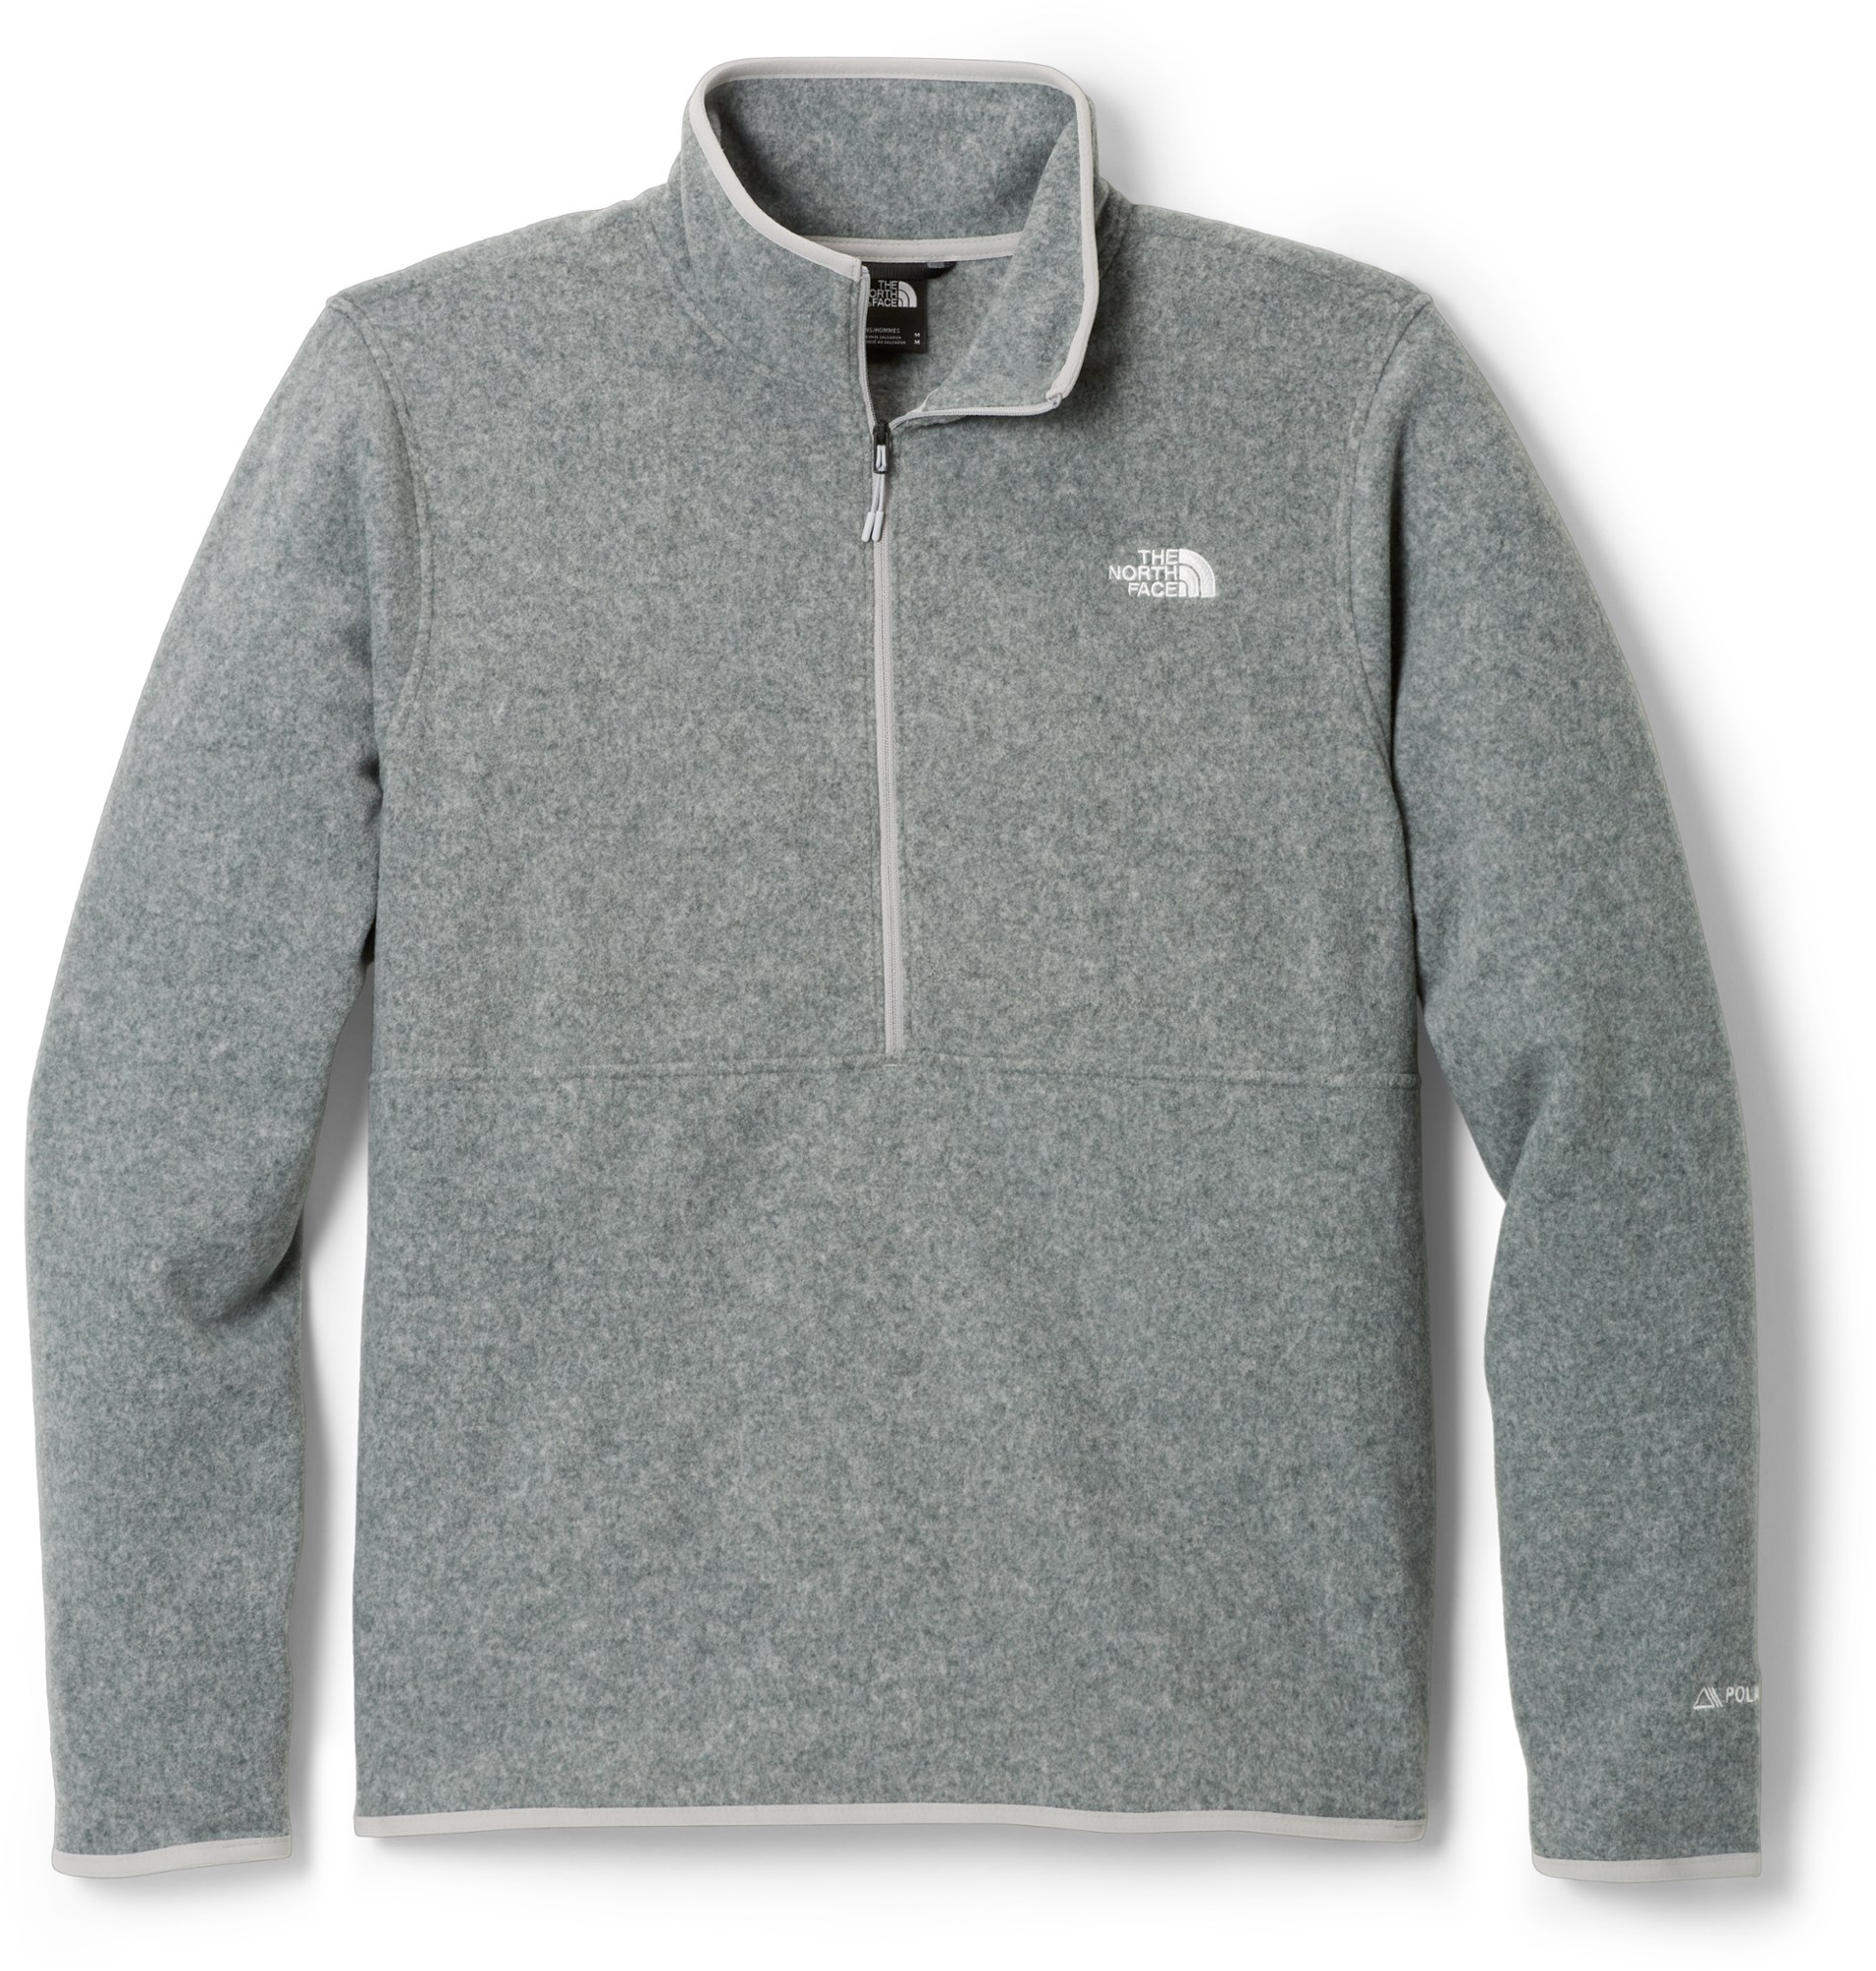 Alpine Polartec 100 флисовый пуловер с молнией до половины - мужской The North Face, серый